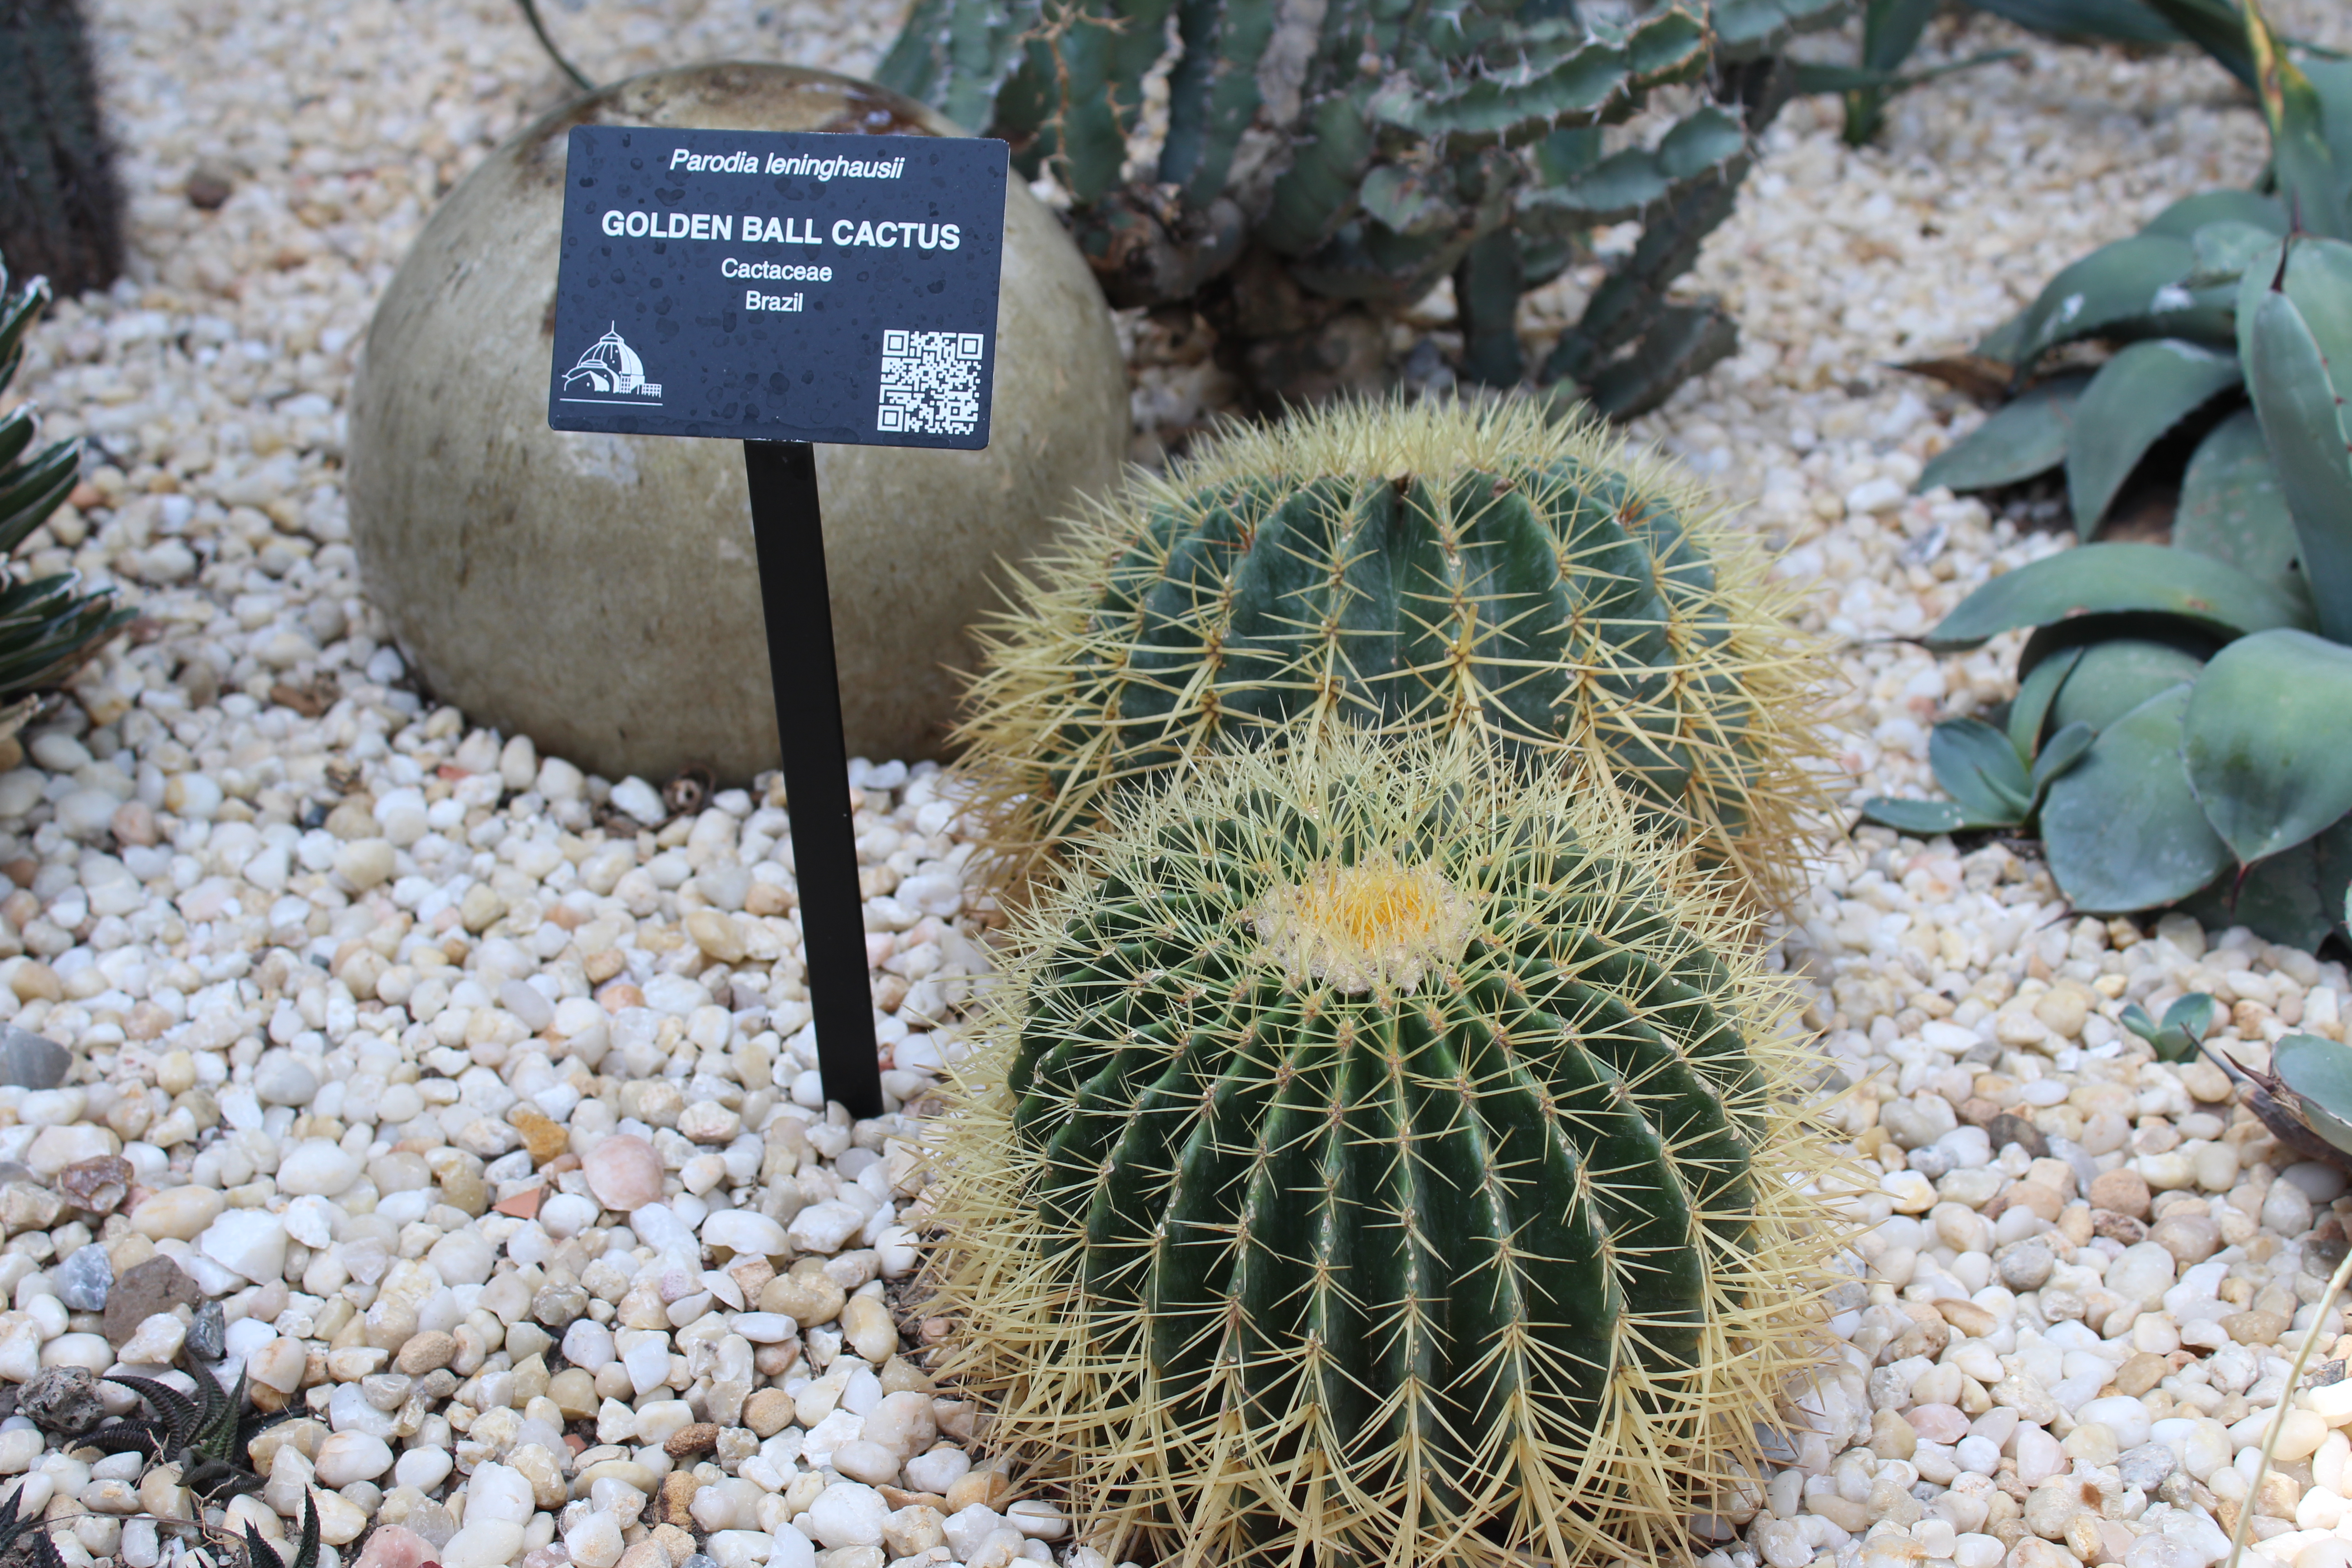 Close up of "Golden Ball" cactus.